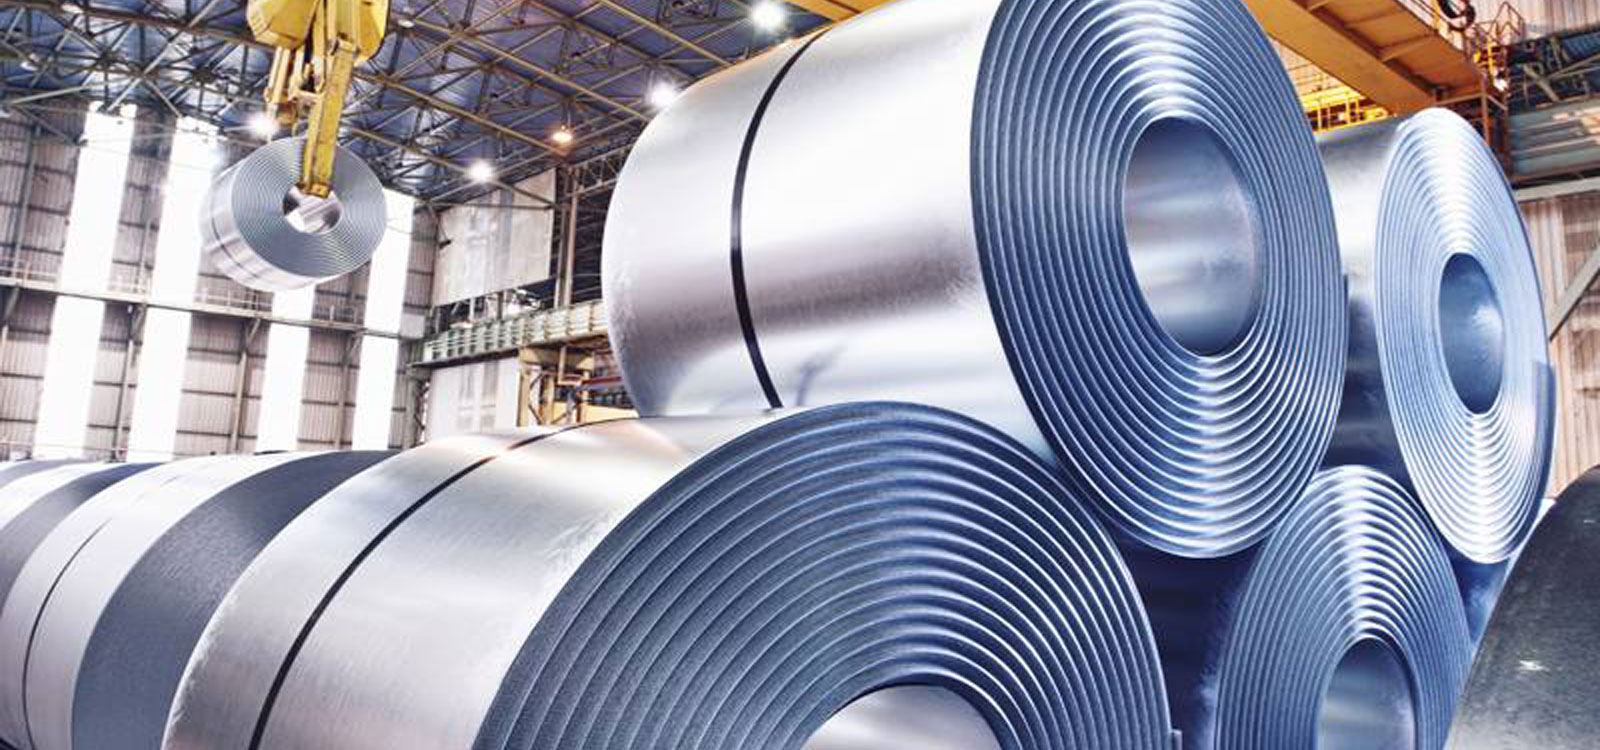 Demir ve çelik ürünleri için mart ayı ithalat-ihracat değerleri açıklandı